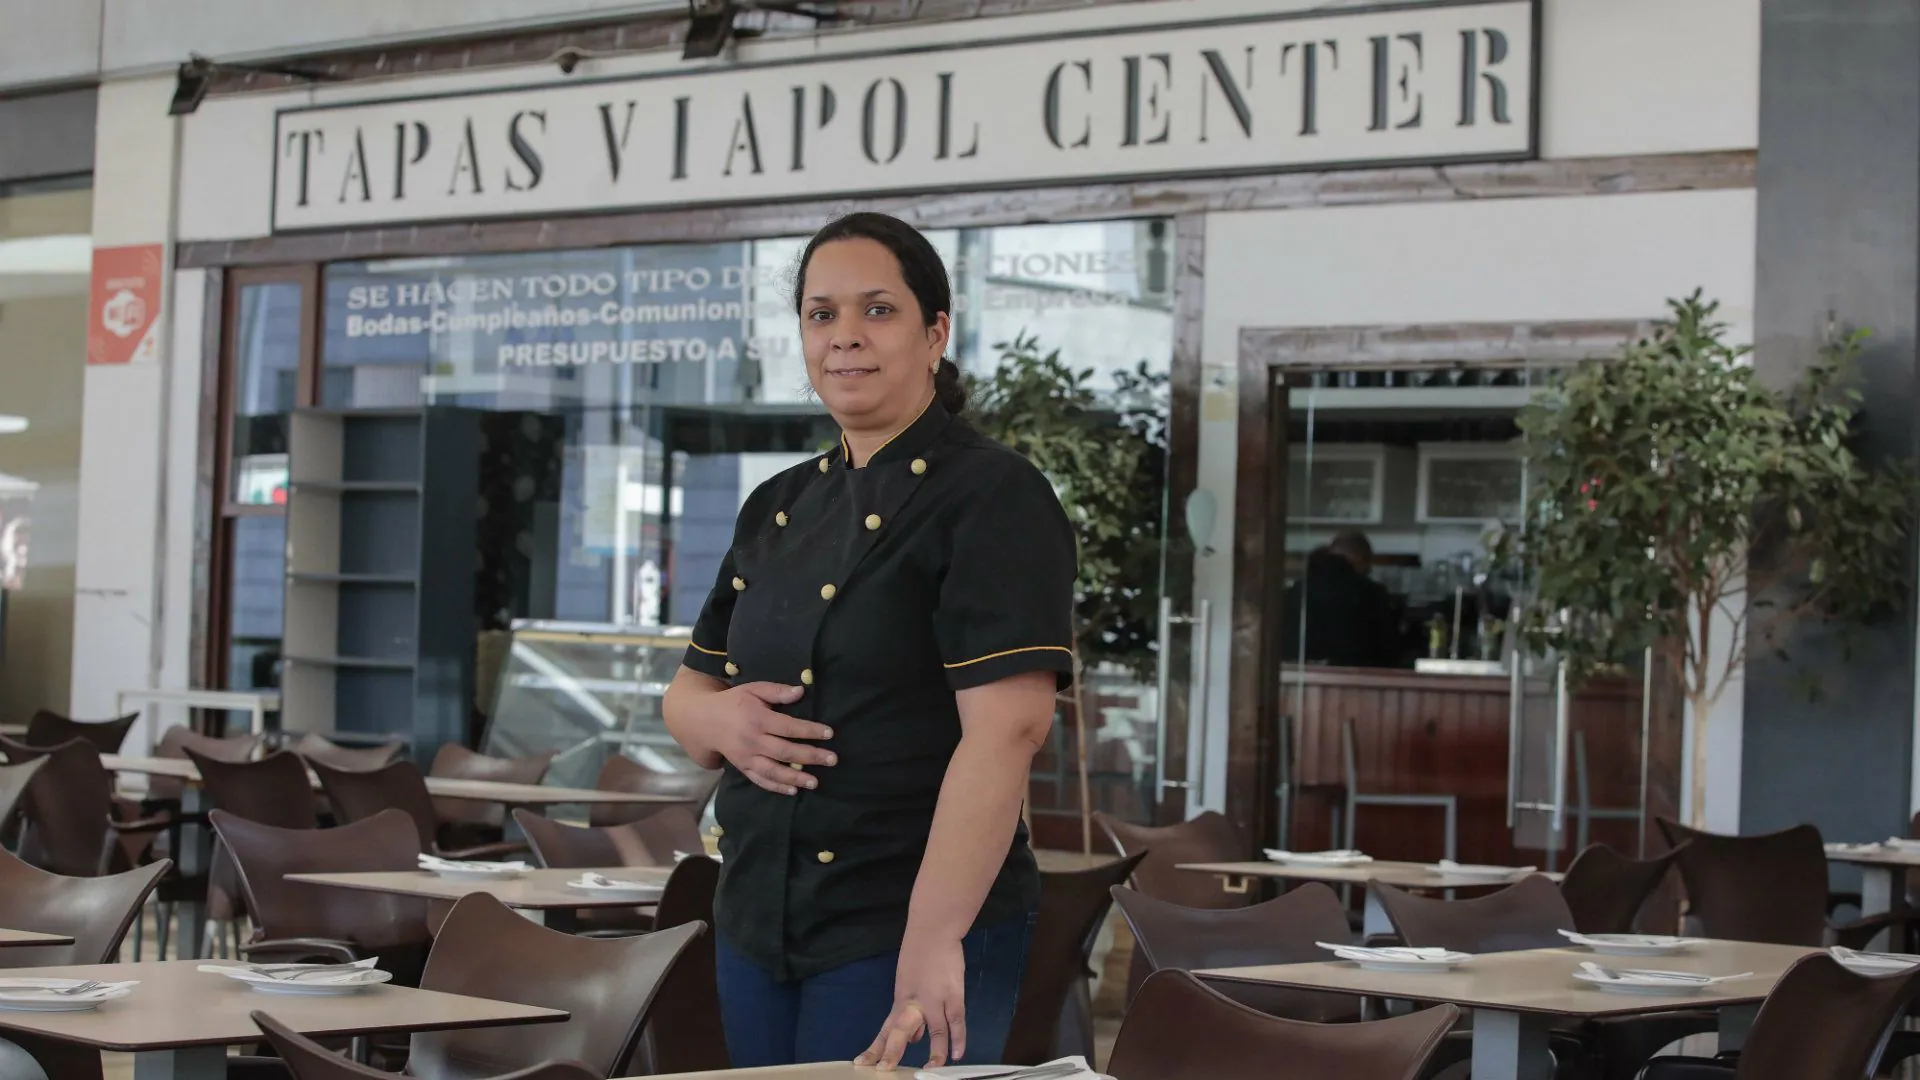 Siham Koudia, chef de Tapas Viapol Center: «Nuestro secreto es cocinar a fuego lento»